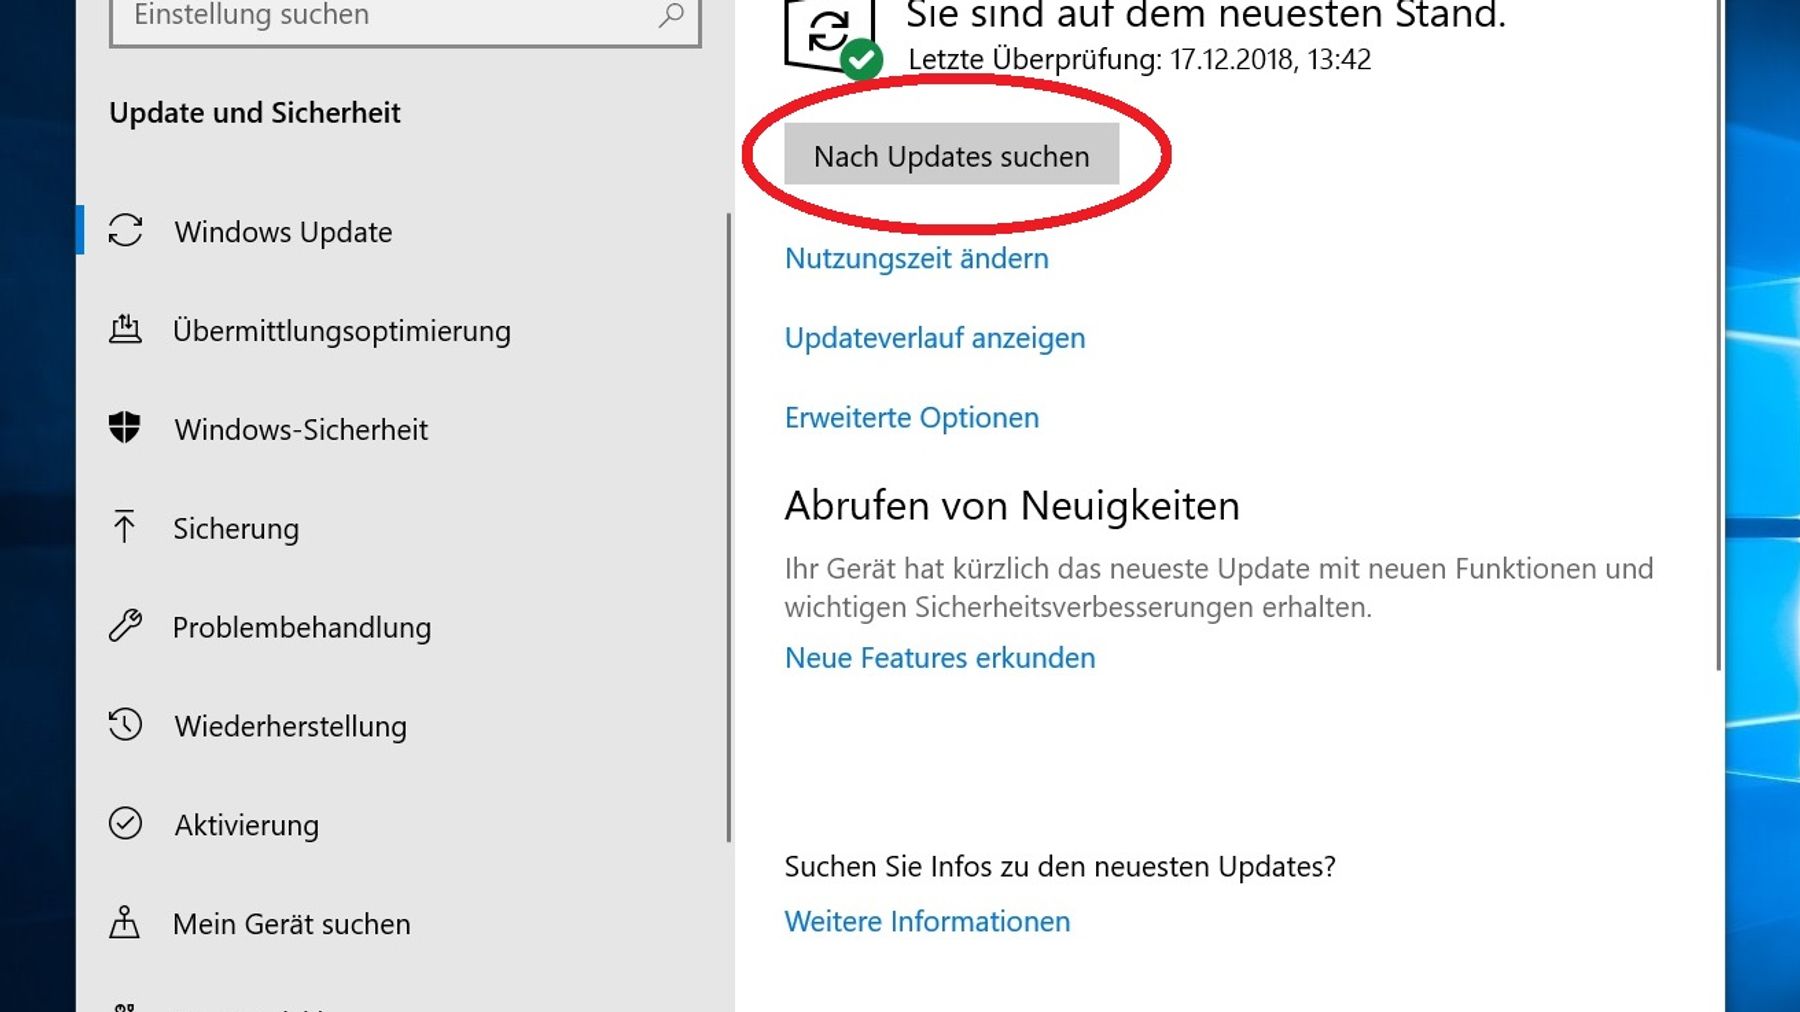 Wählen Sie Update und Sicherheit.
Klicken Sie auf Windows Update.